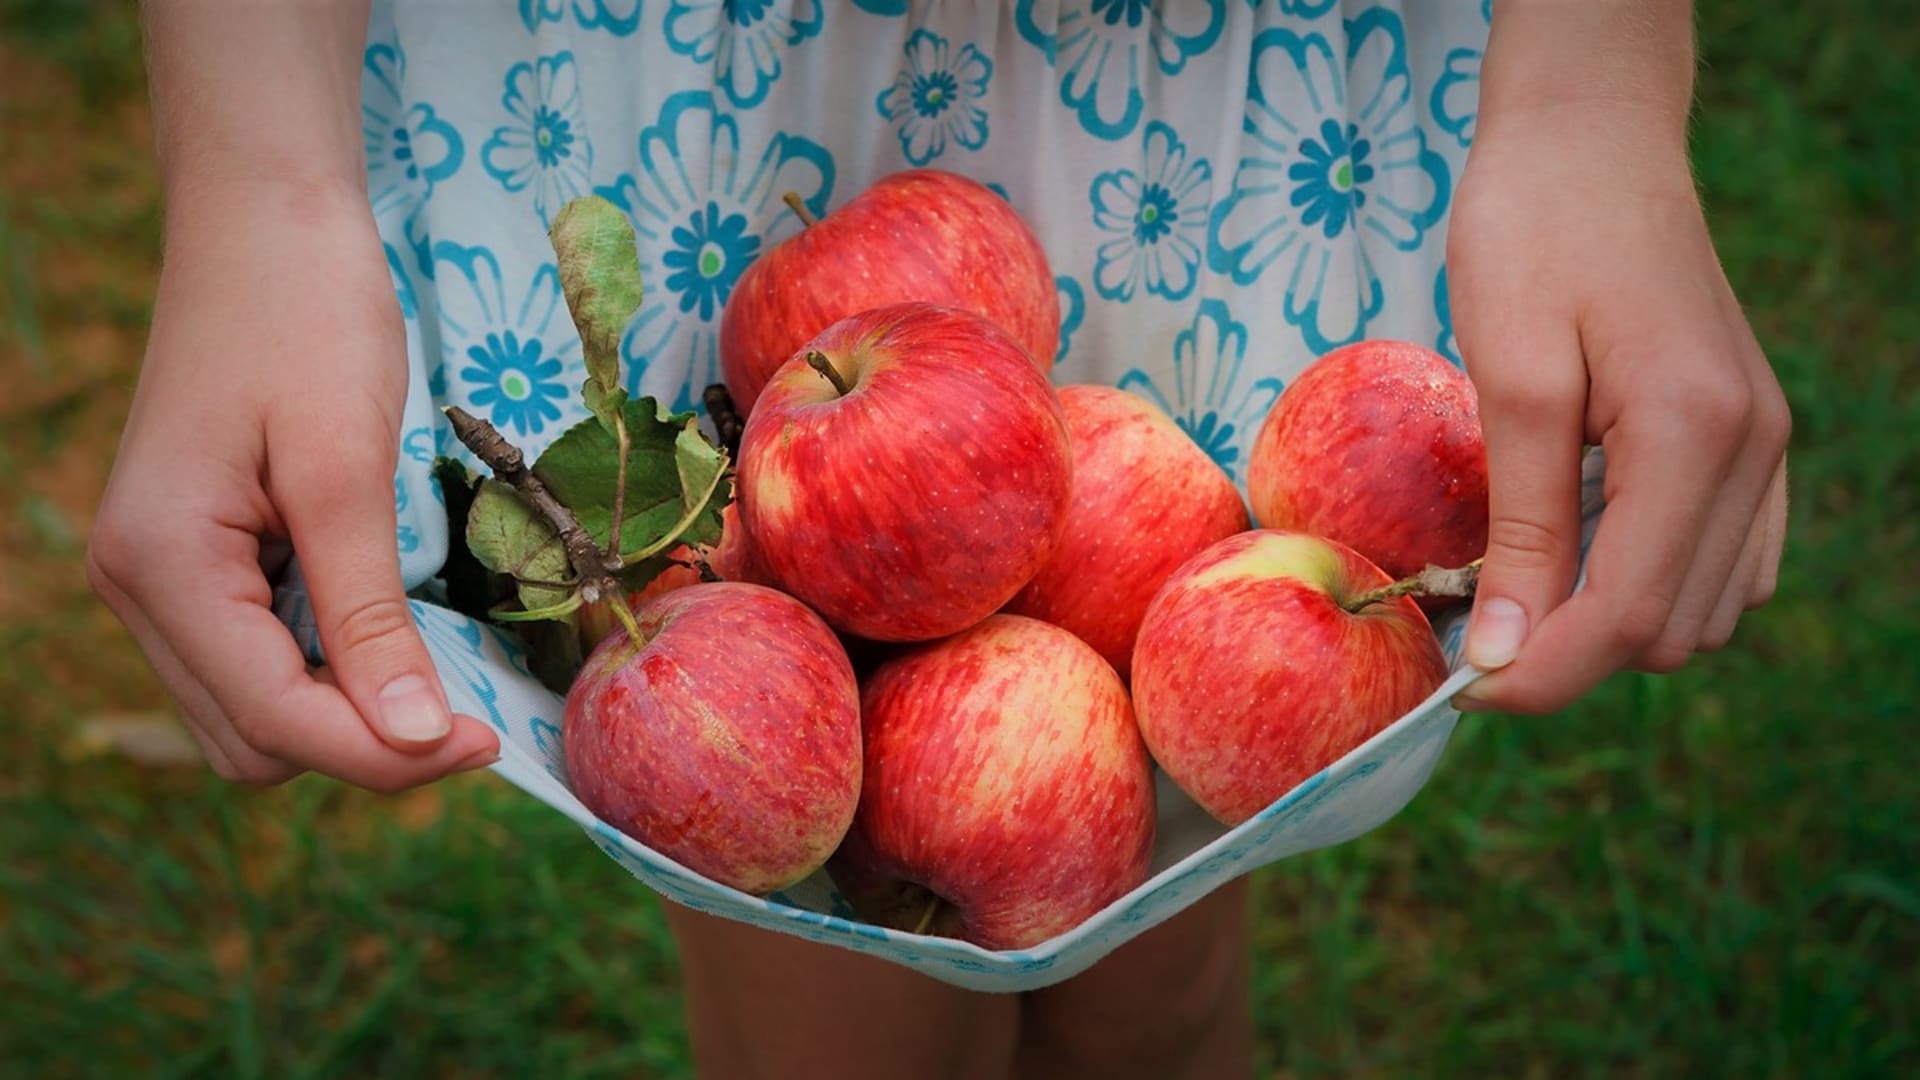 Co s padanými jablky? Upečte obrácený koláč či žemlovku a udělejte sirup nebo jablečný ocet